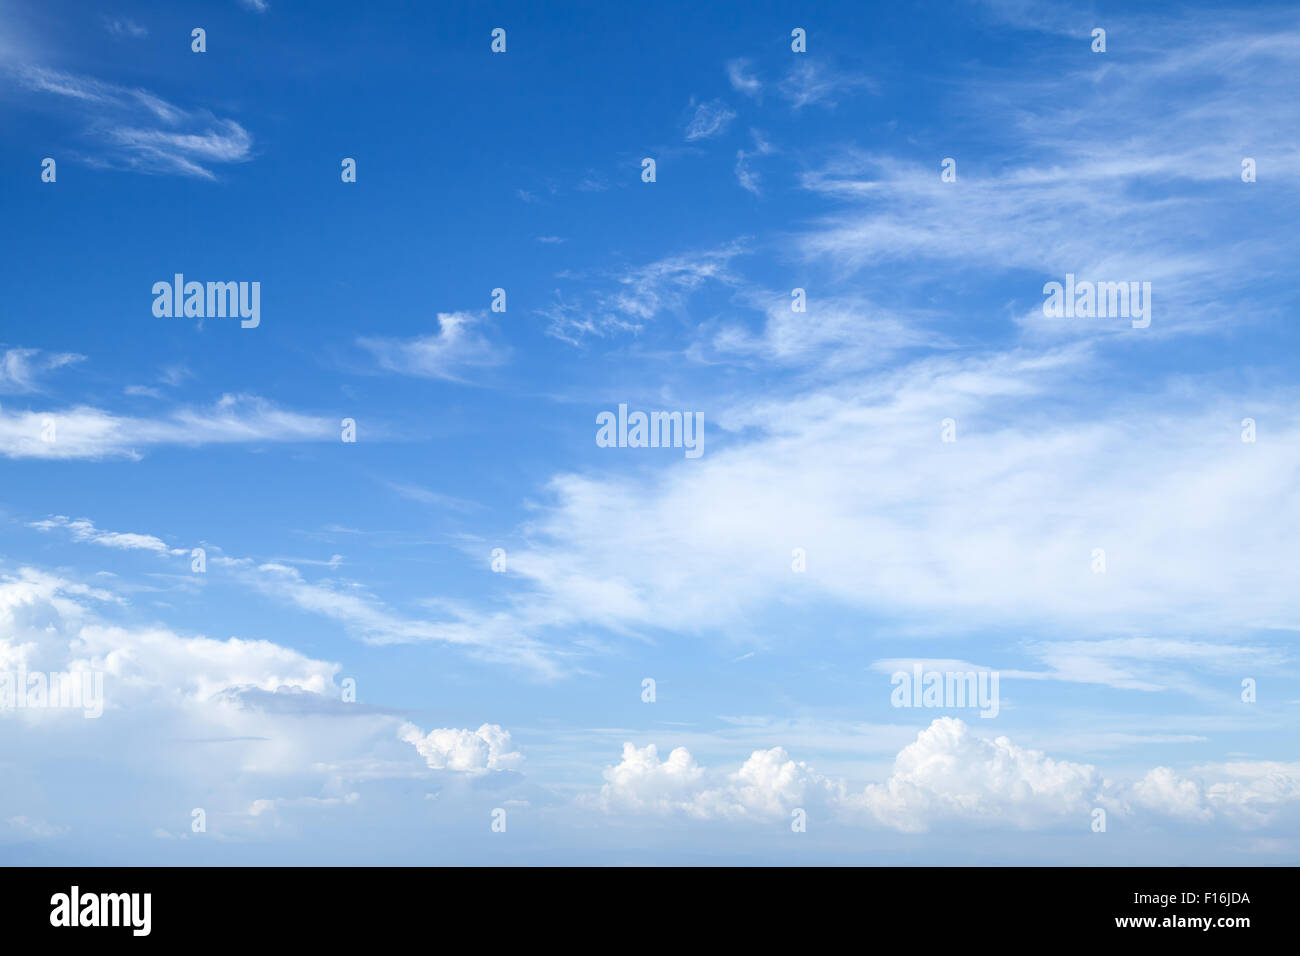 Cirrus et de stratocumulus. Ciel bleu avec différents types de nuages, le fond photo Banque D'Images